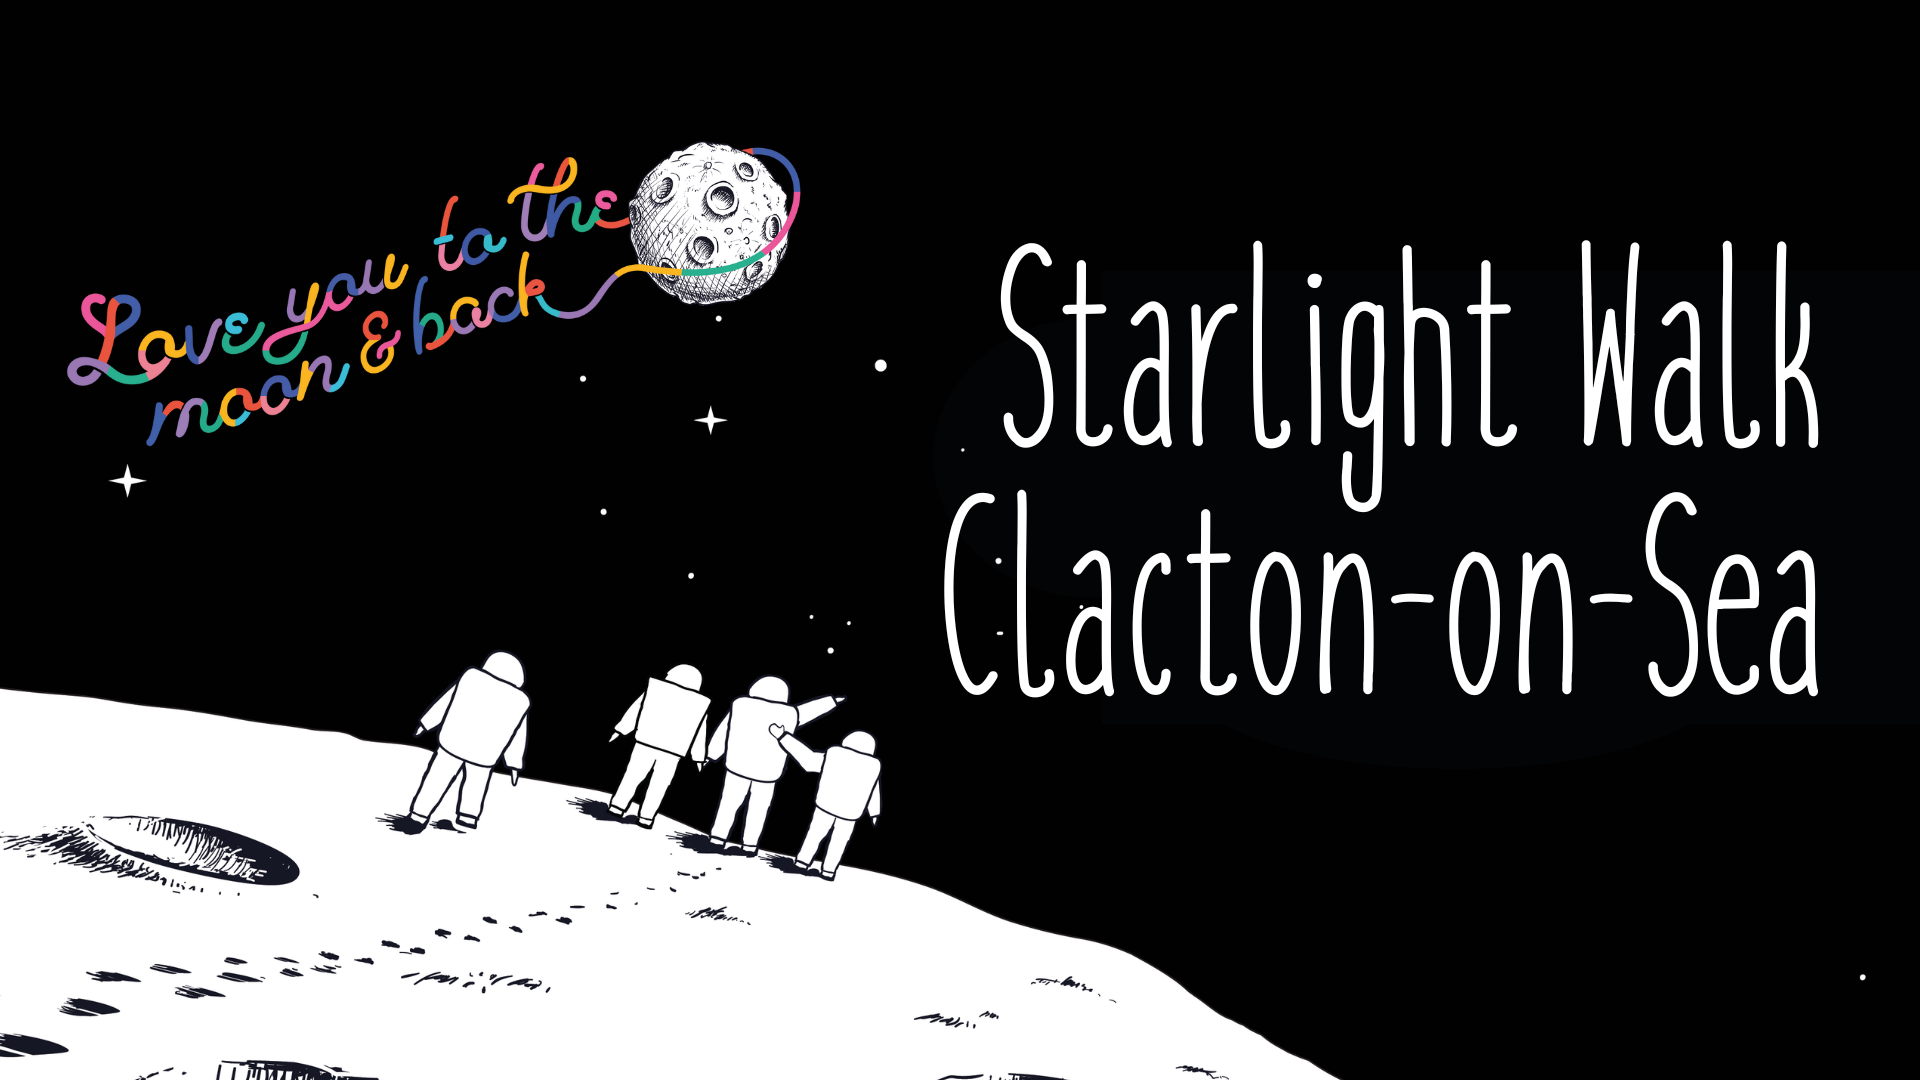 Starlight Walk Clacton-On-Sea, four astronauts walking on moon